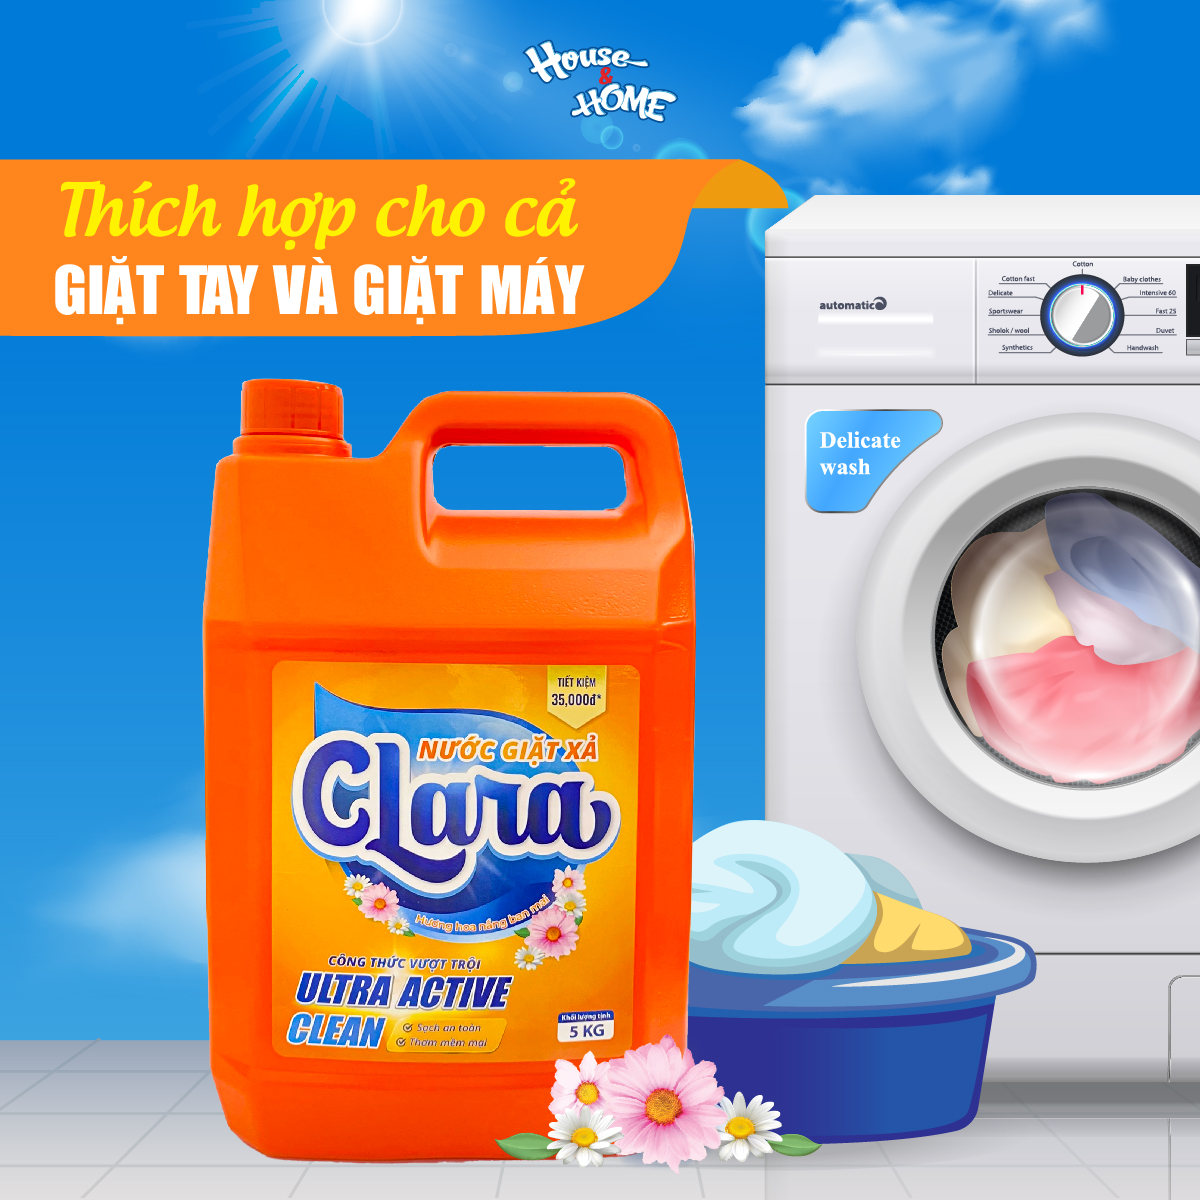 Nước giặt xả Clara hương hoa nắng ban mai can 5Kg